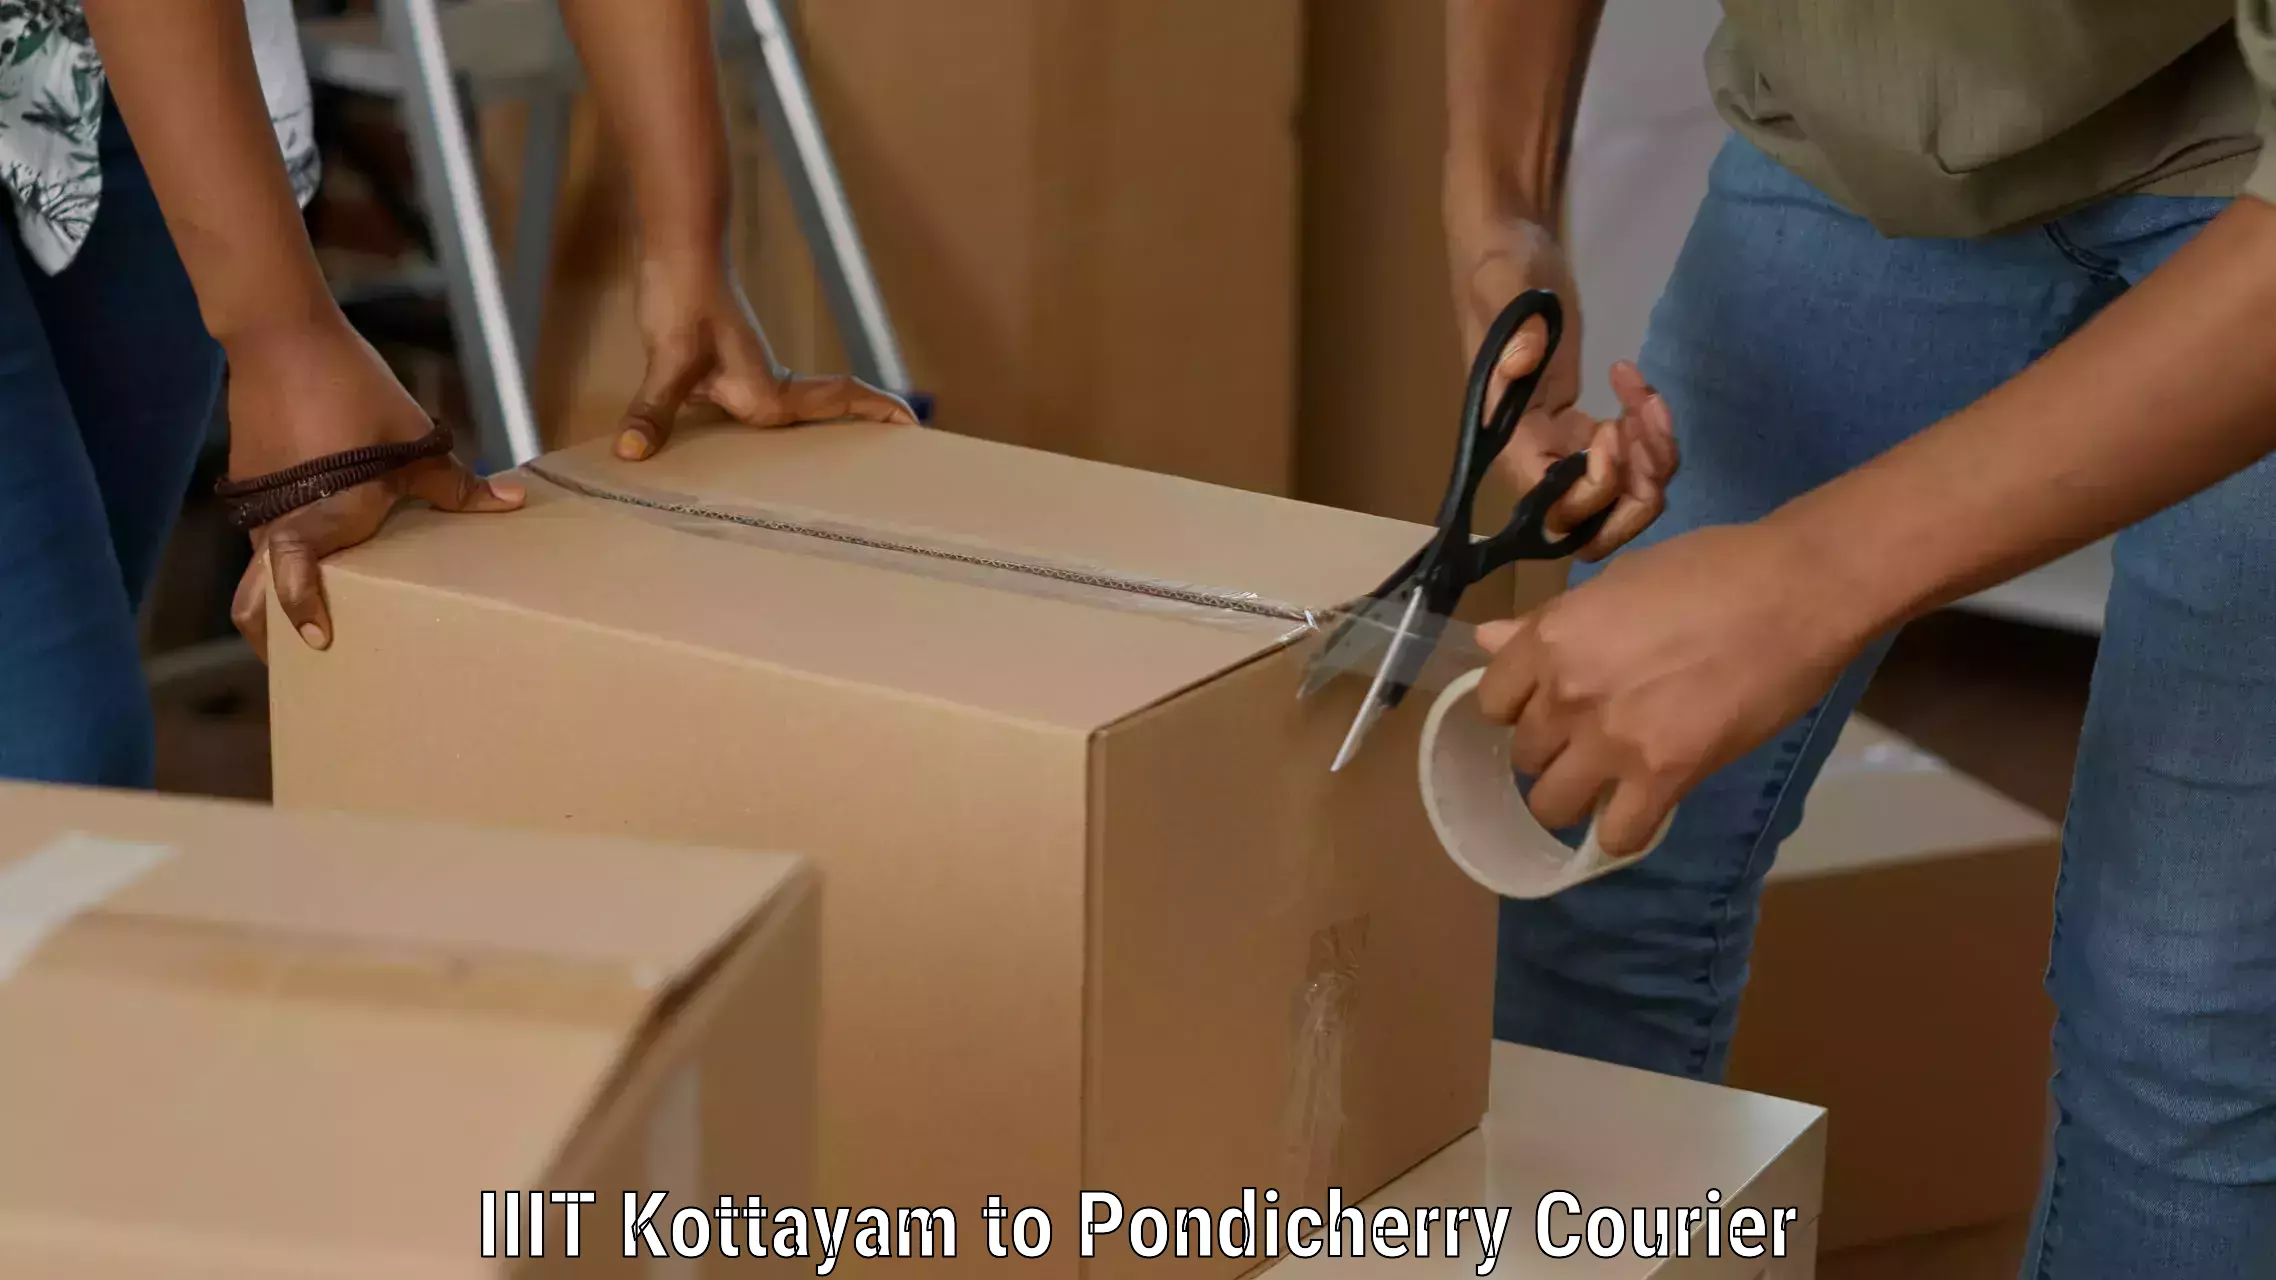 Premium delivery services IIIT Kottayam to Pondicherry University